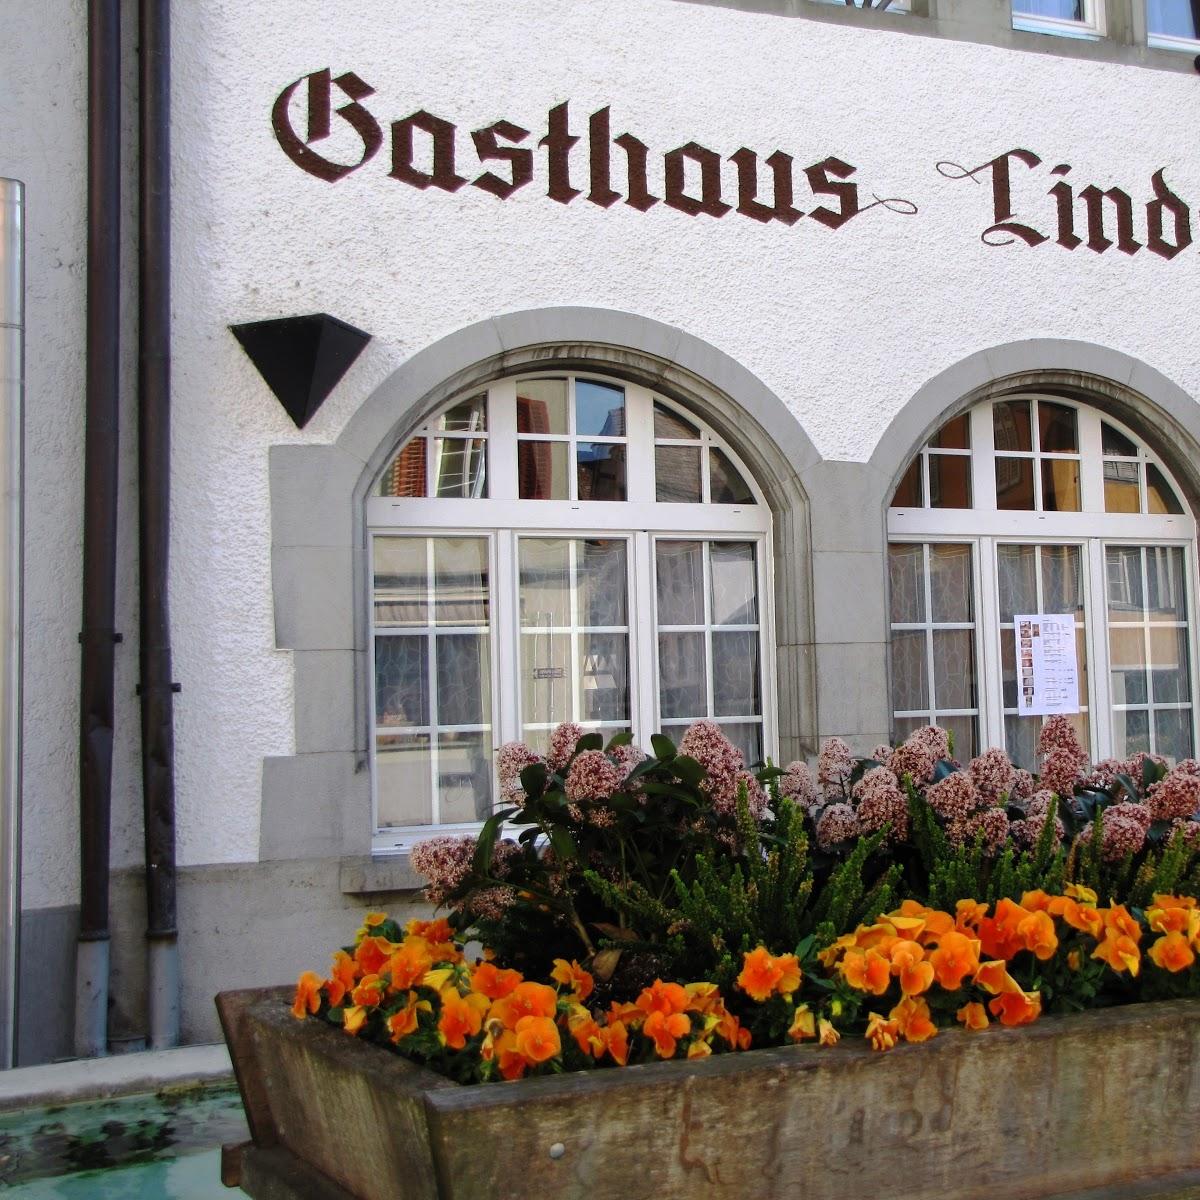 Restaurant "Restaurant Linde" in Diessenhofen